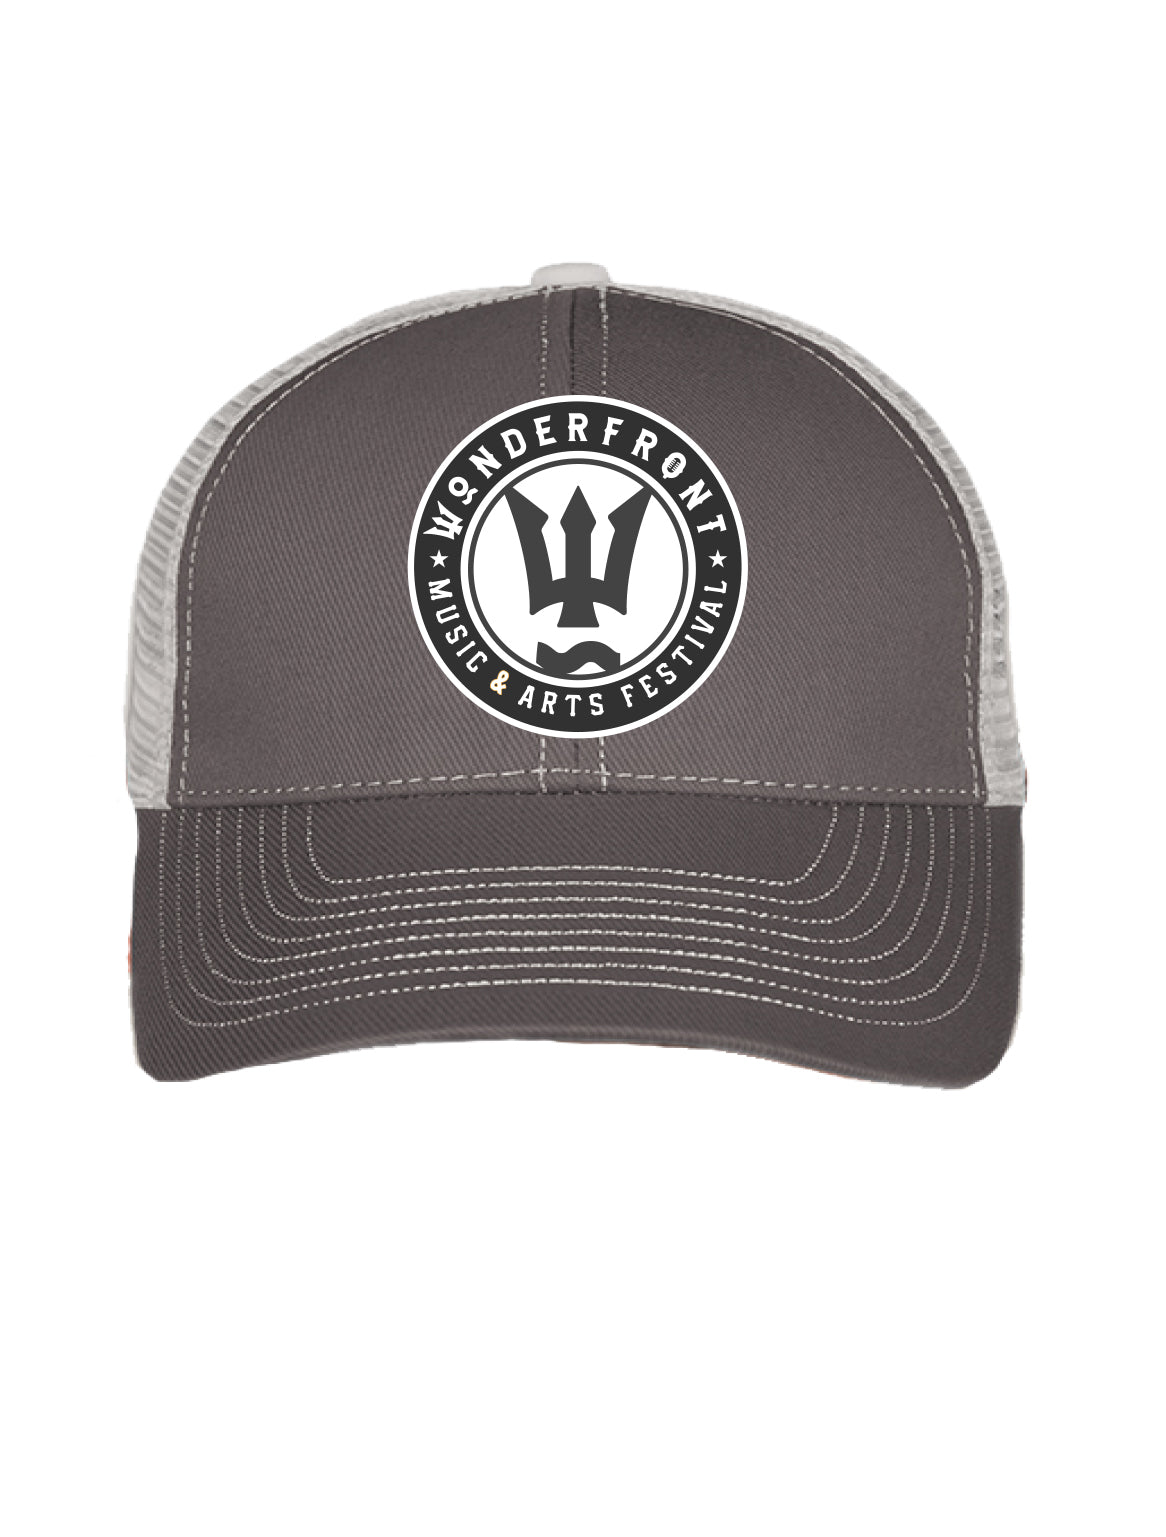 Grey Mesh Trucker Hat